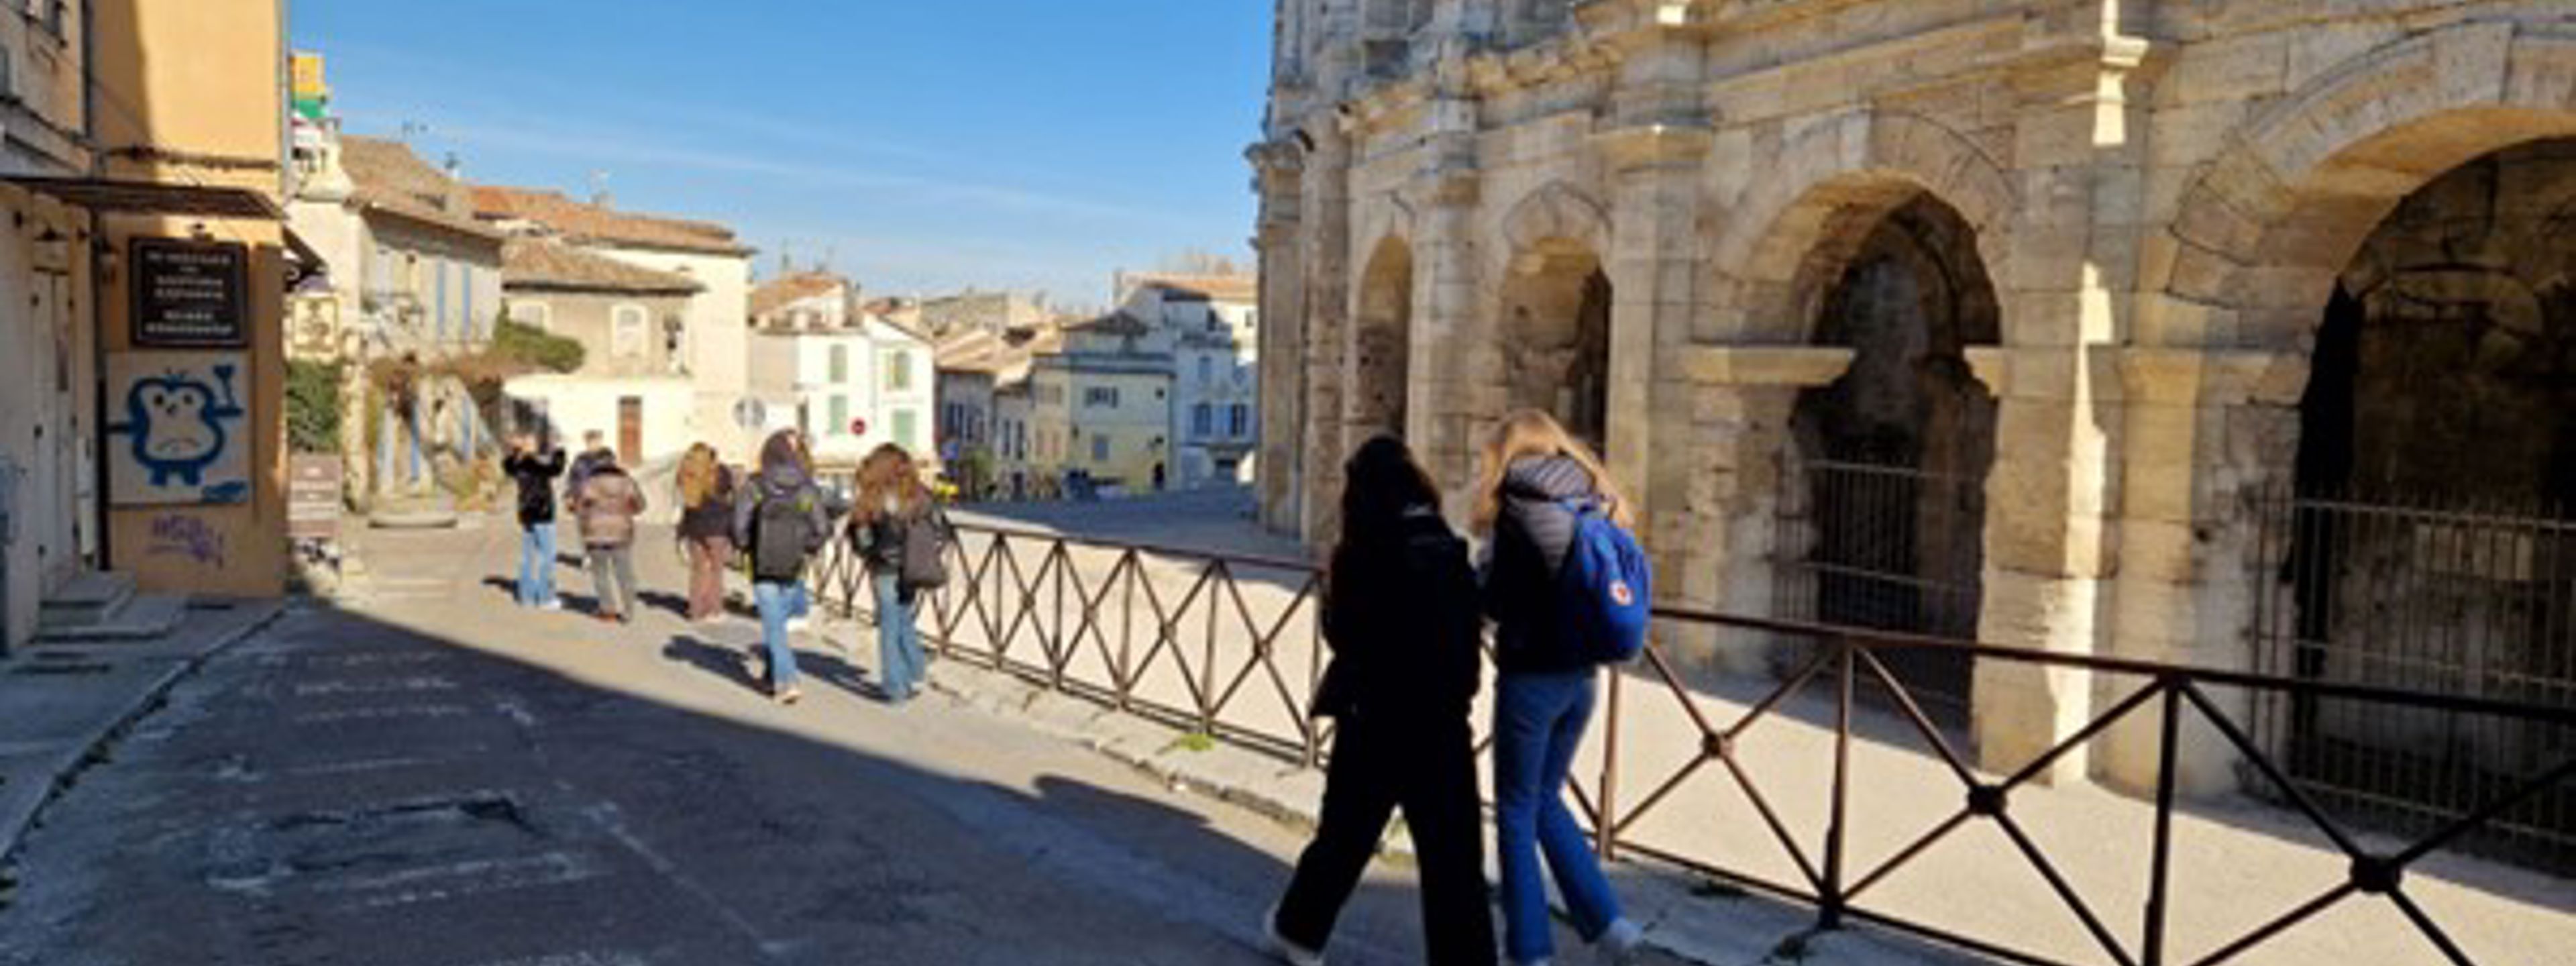 Ei gågate i den sørlege byen Arles i Frankrike. Det er solskin, og midt i bilete går det fleire menneske med ryggen til. Til høgre er det gamle, lyse steinbygninger med utsmykningar.